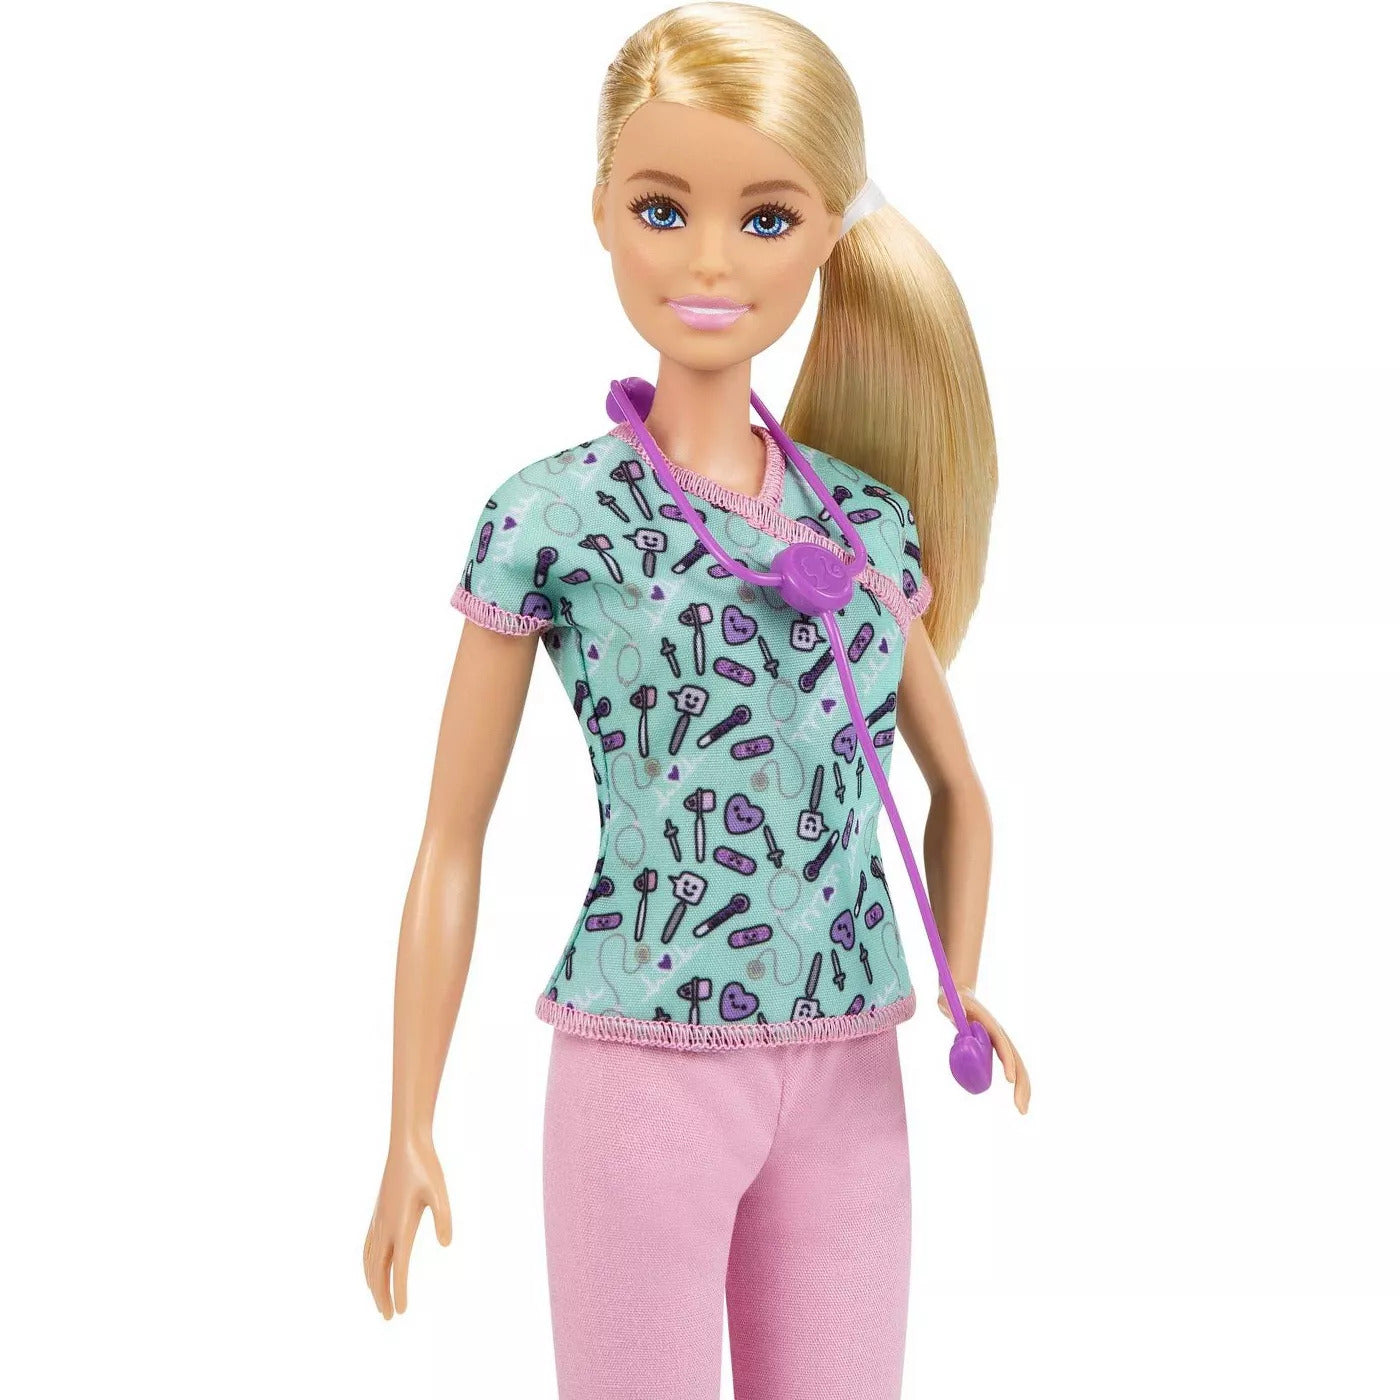 Barbie Career Doll - Nurse